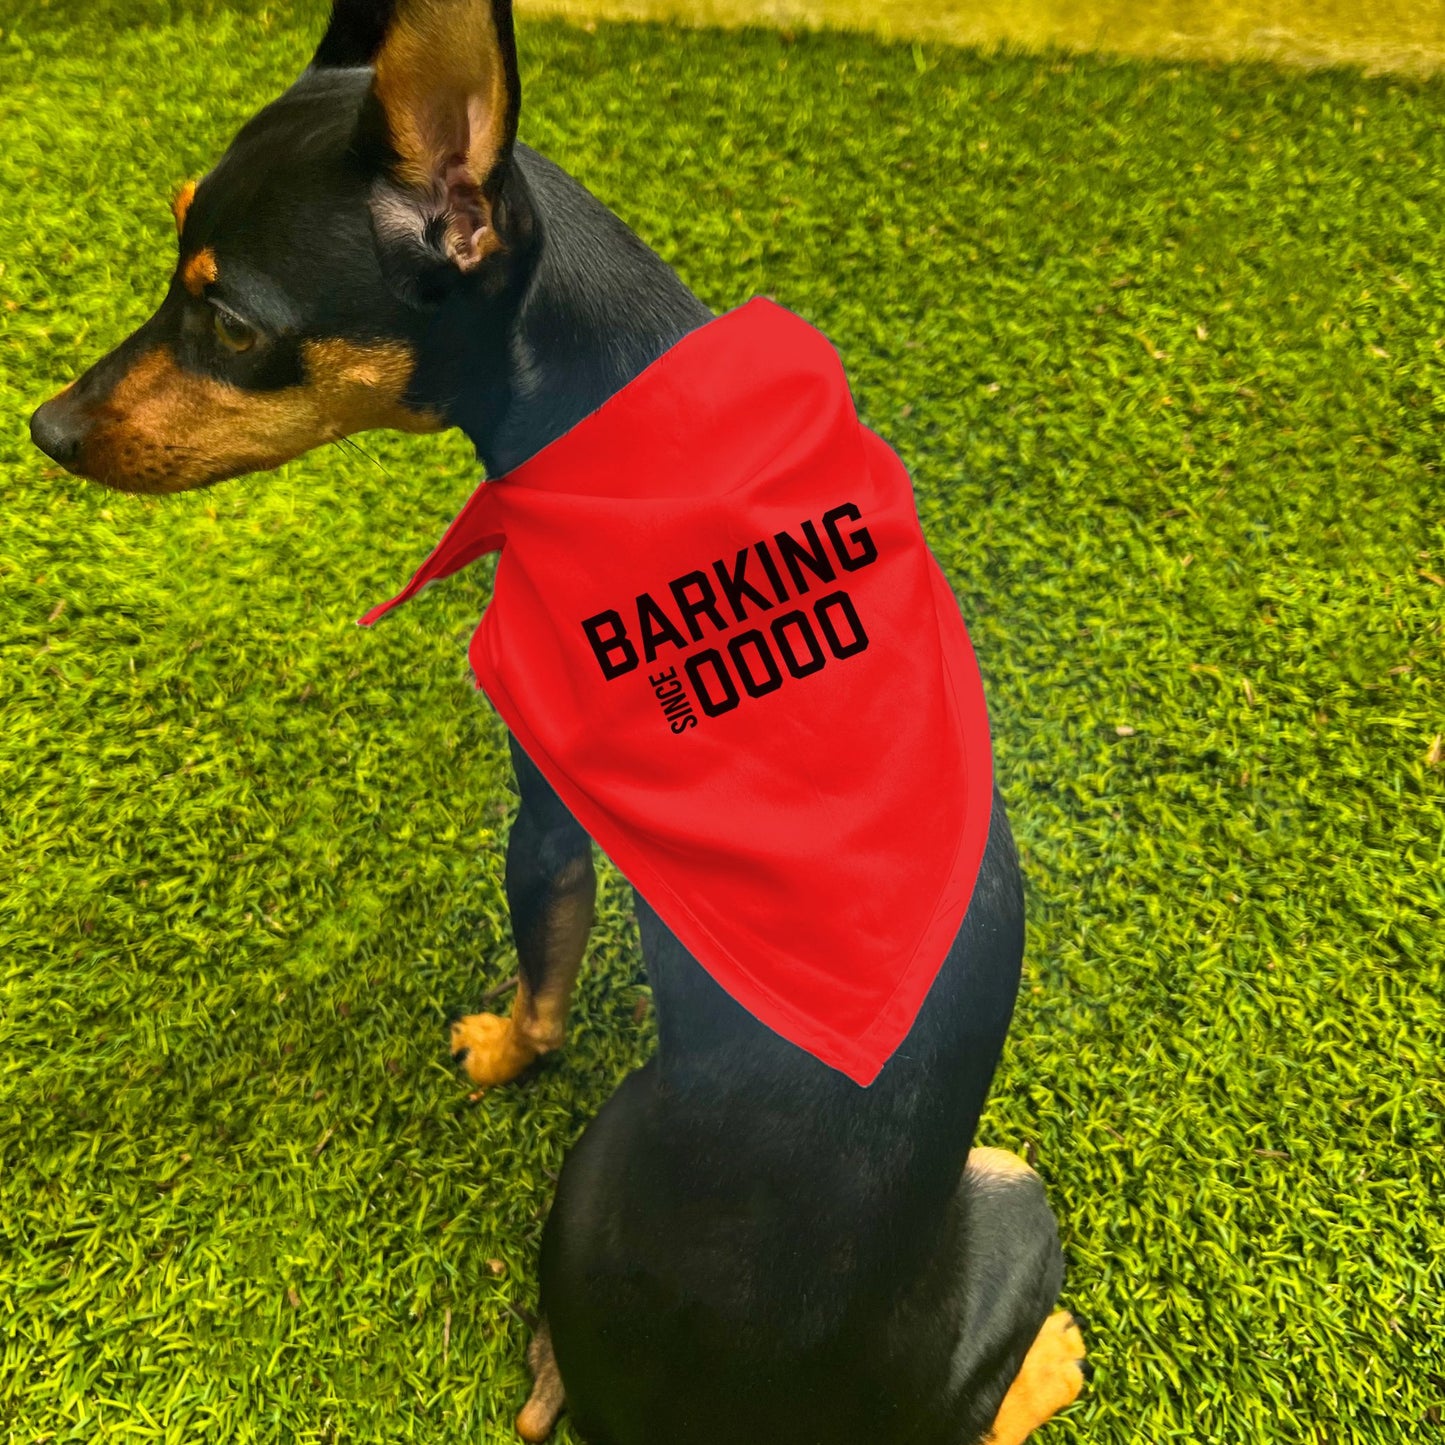 "Barking Since 0000" Custom Dog Bandana